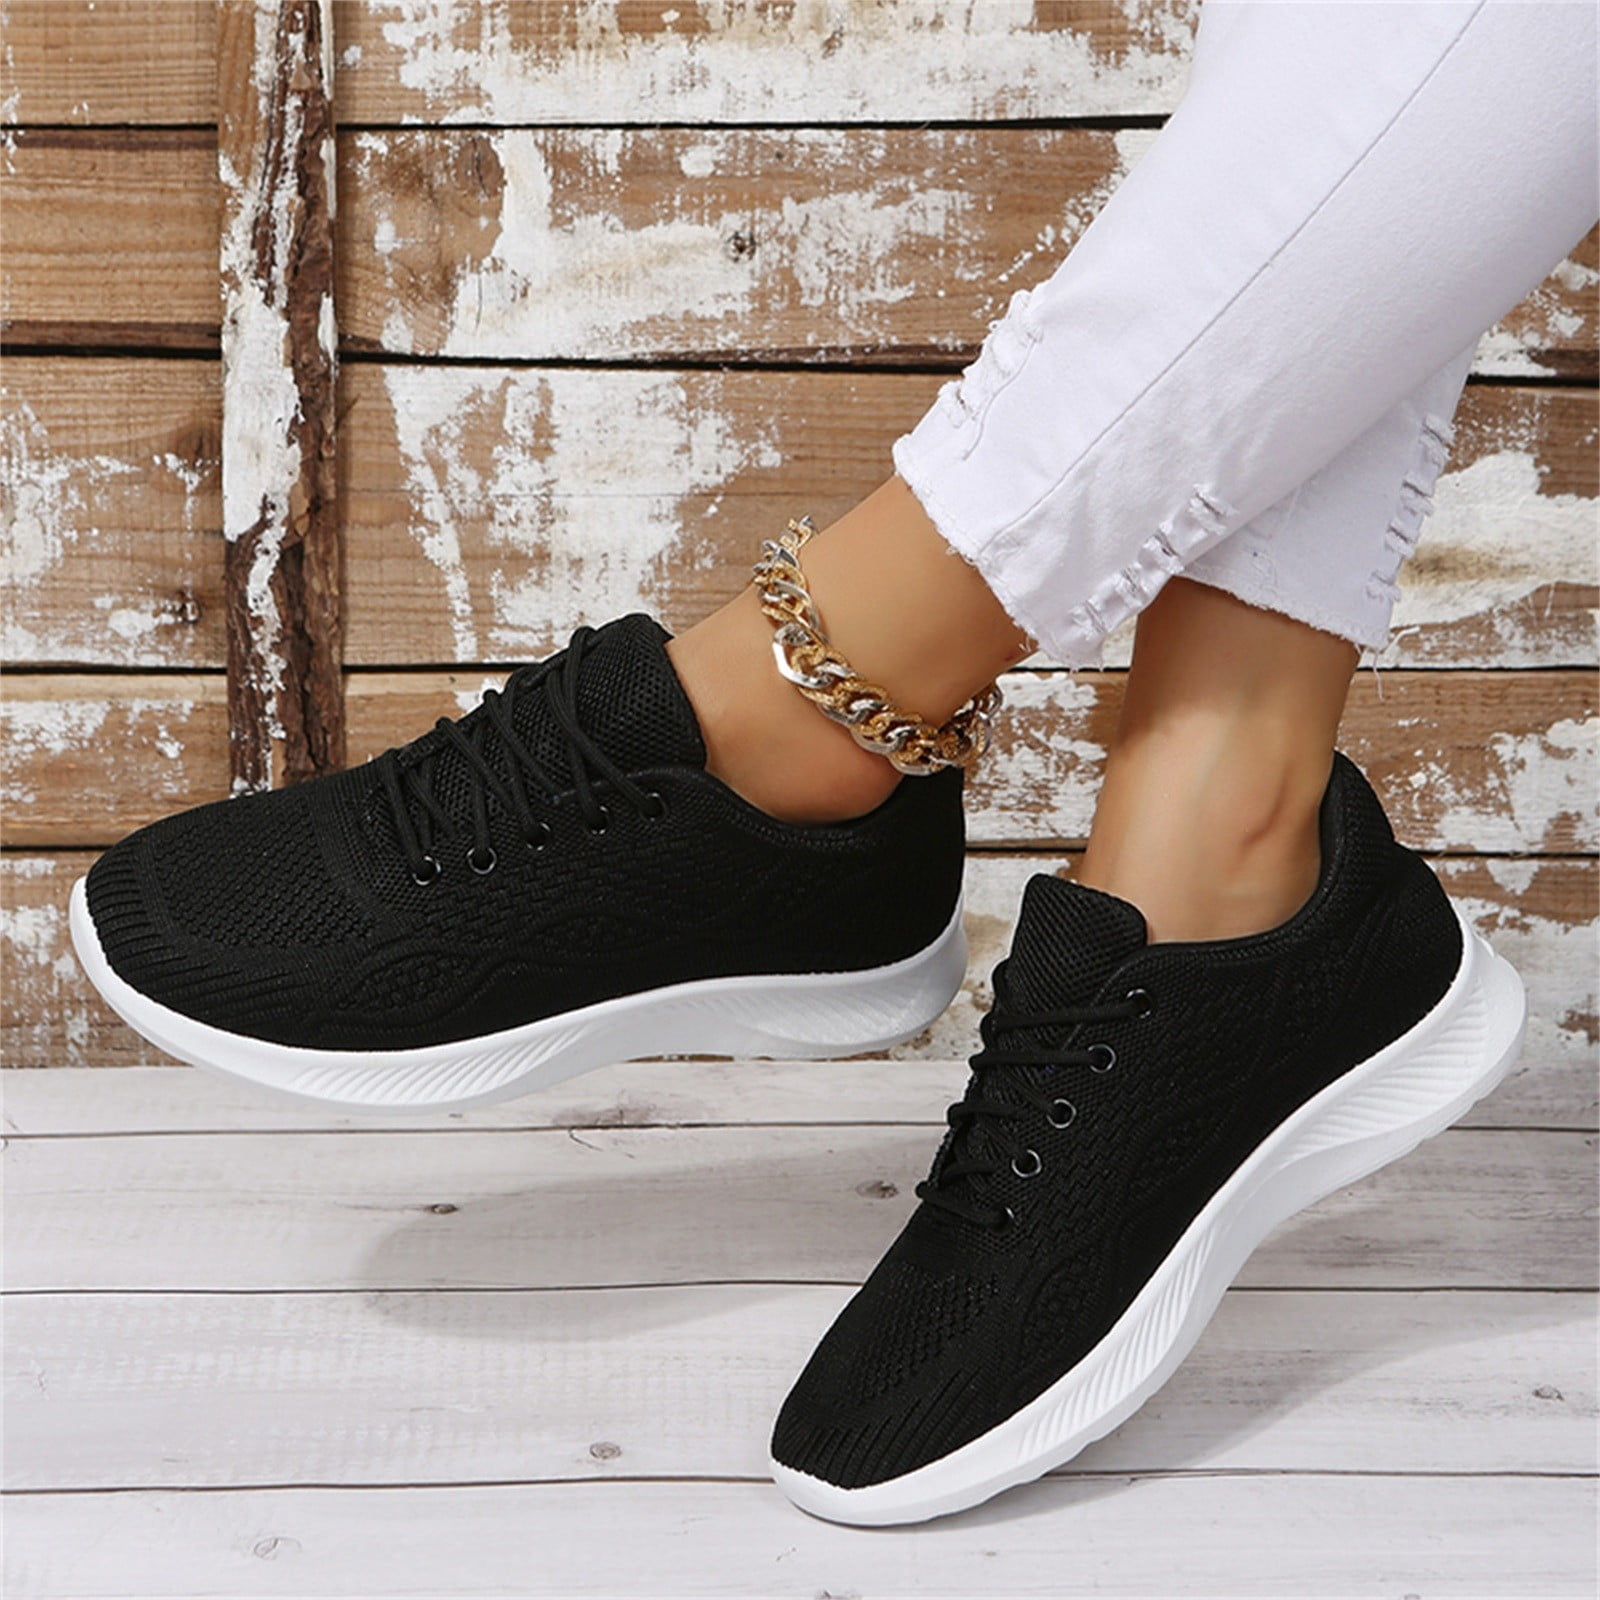 Buy Men Black Casual Sneakers Online | Walkway Shoes